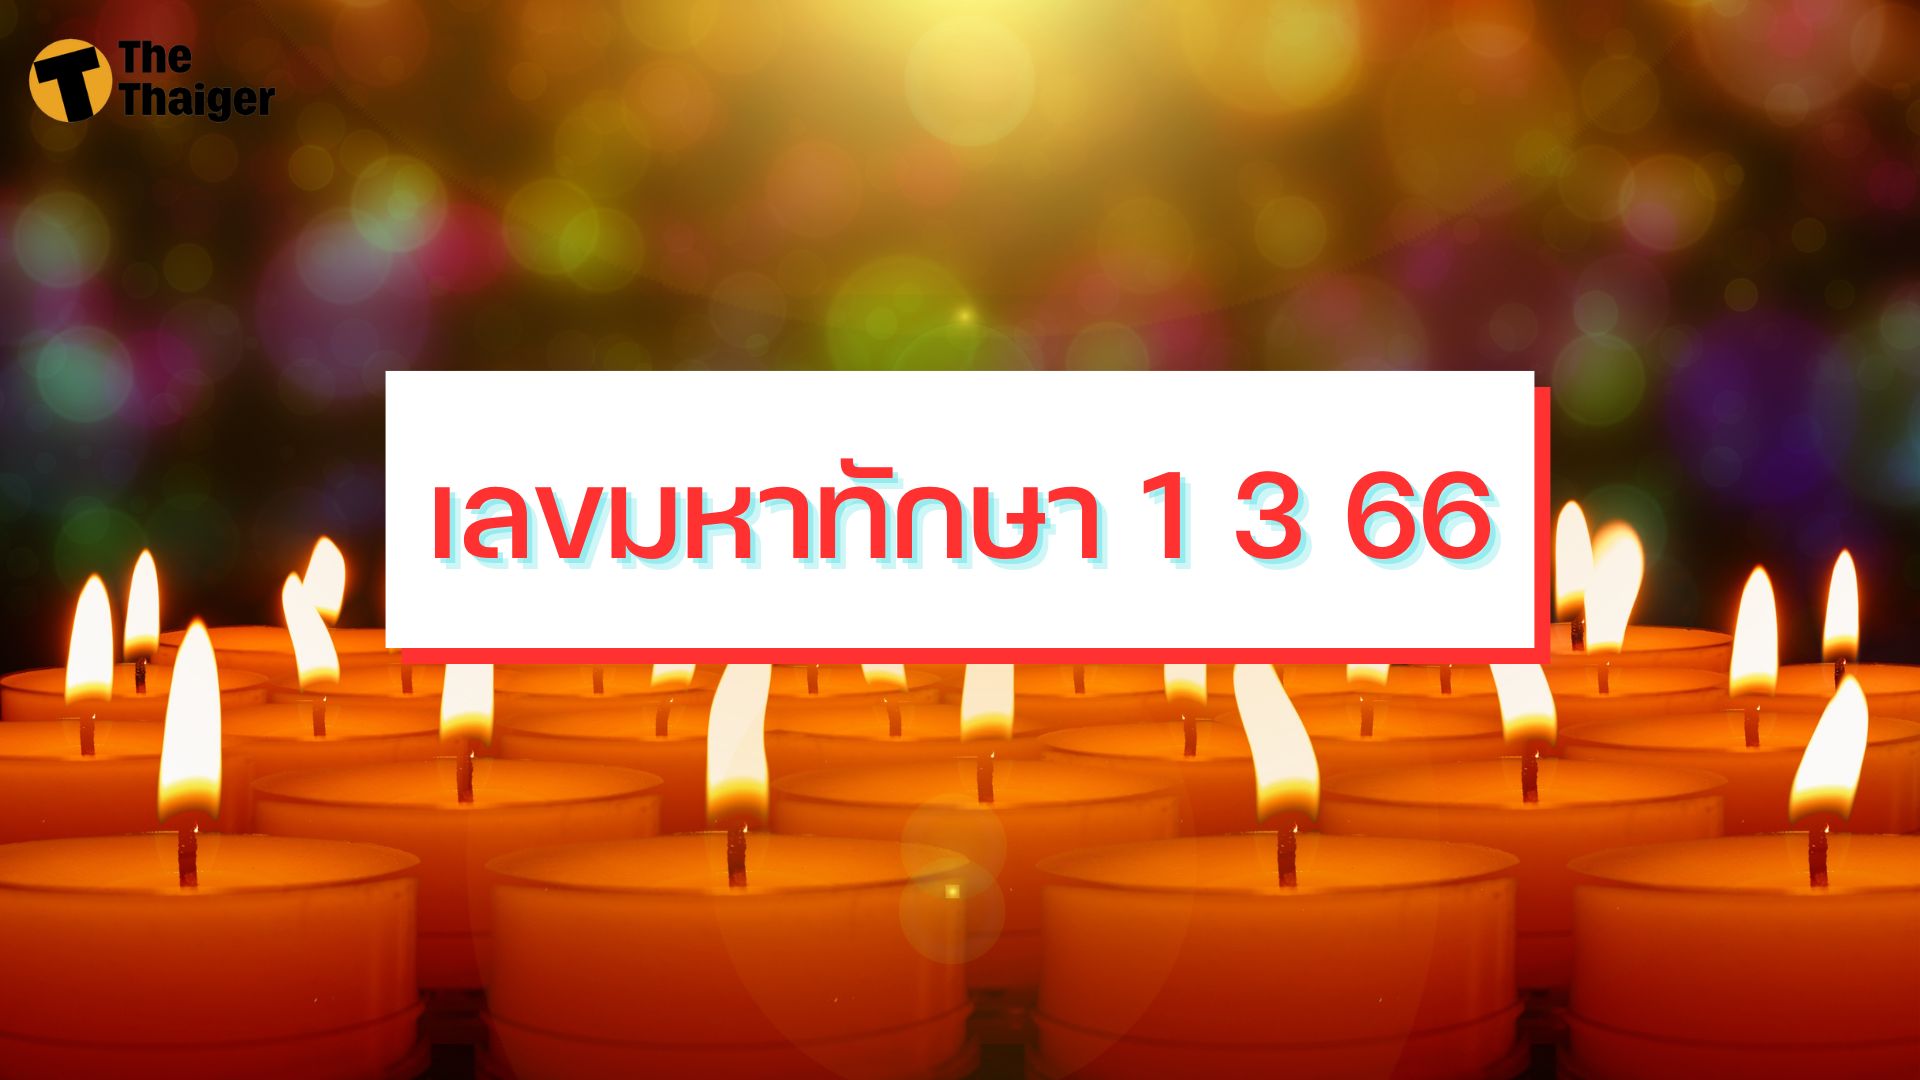 เลขมหาทักษา 1 3 66 เปิดแนวทางหวยงวดนี้ เคาะเลขดังลุ้นรางวัลใหญ่ | Thaiger ข่าวไทย